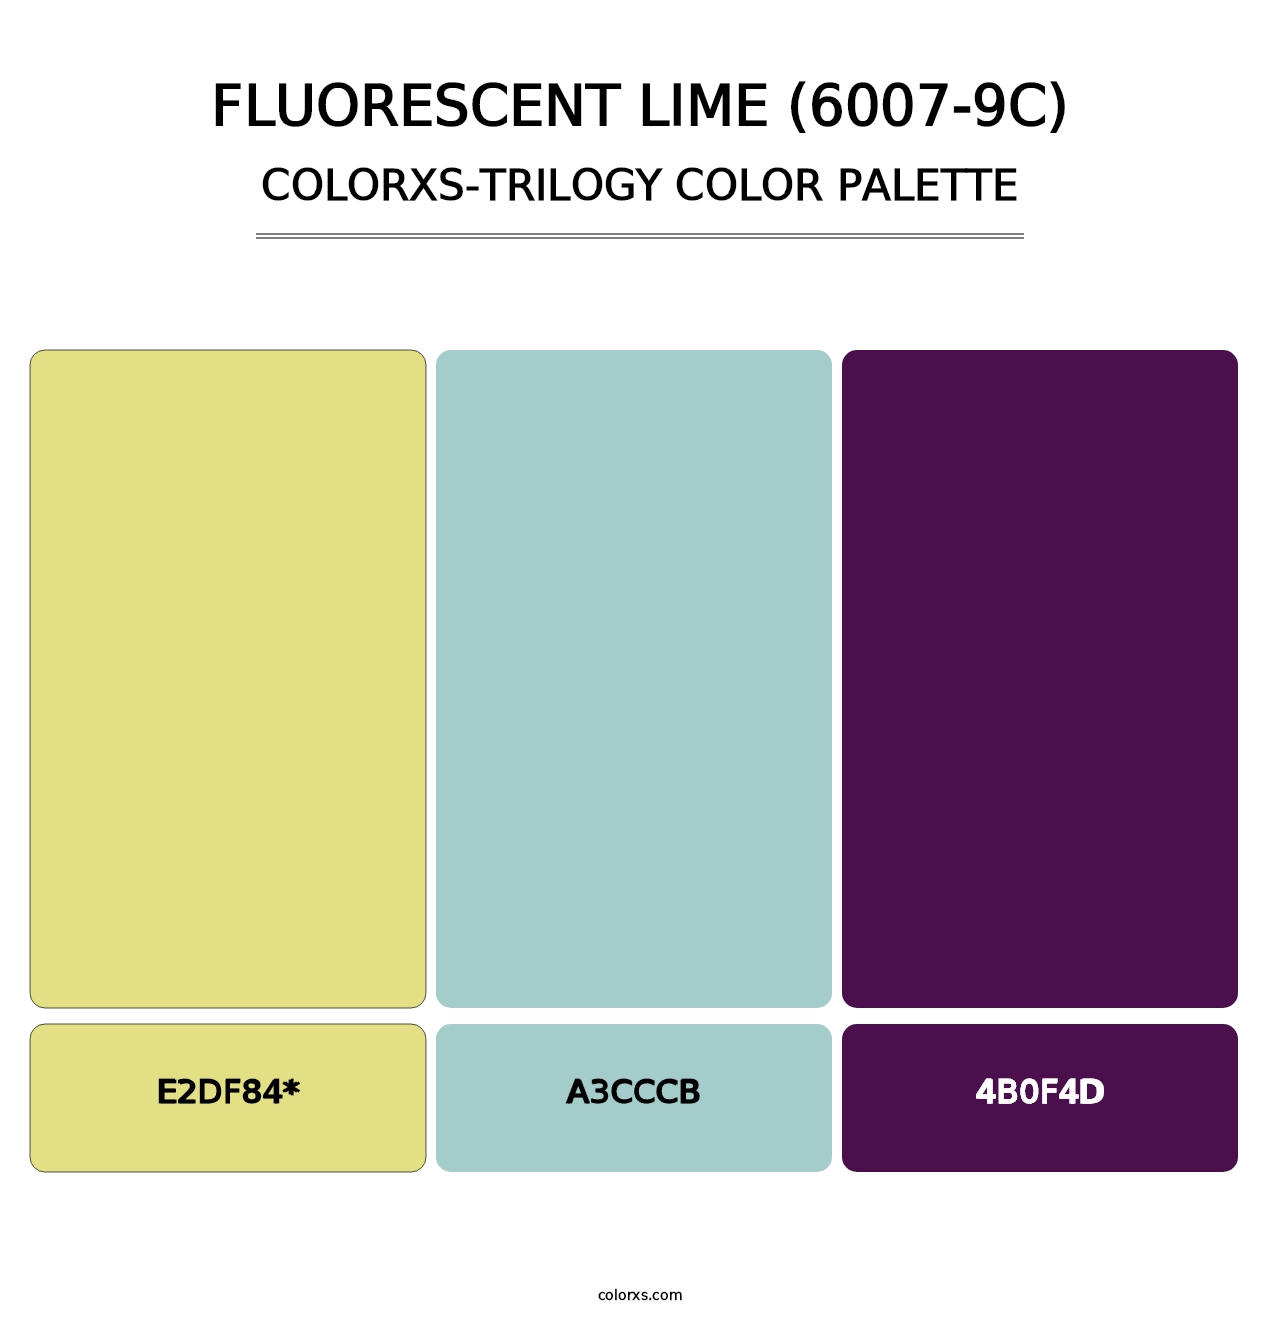 Fluorescent Lime (6007-9C) - Colorxs Trilogy Palette